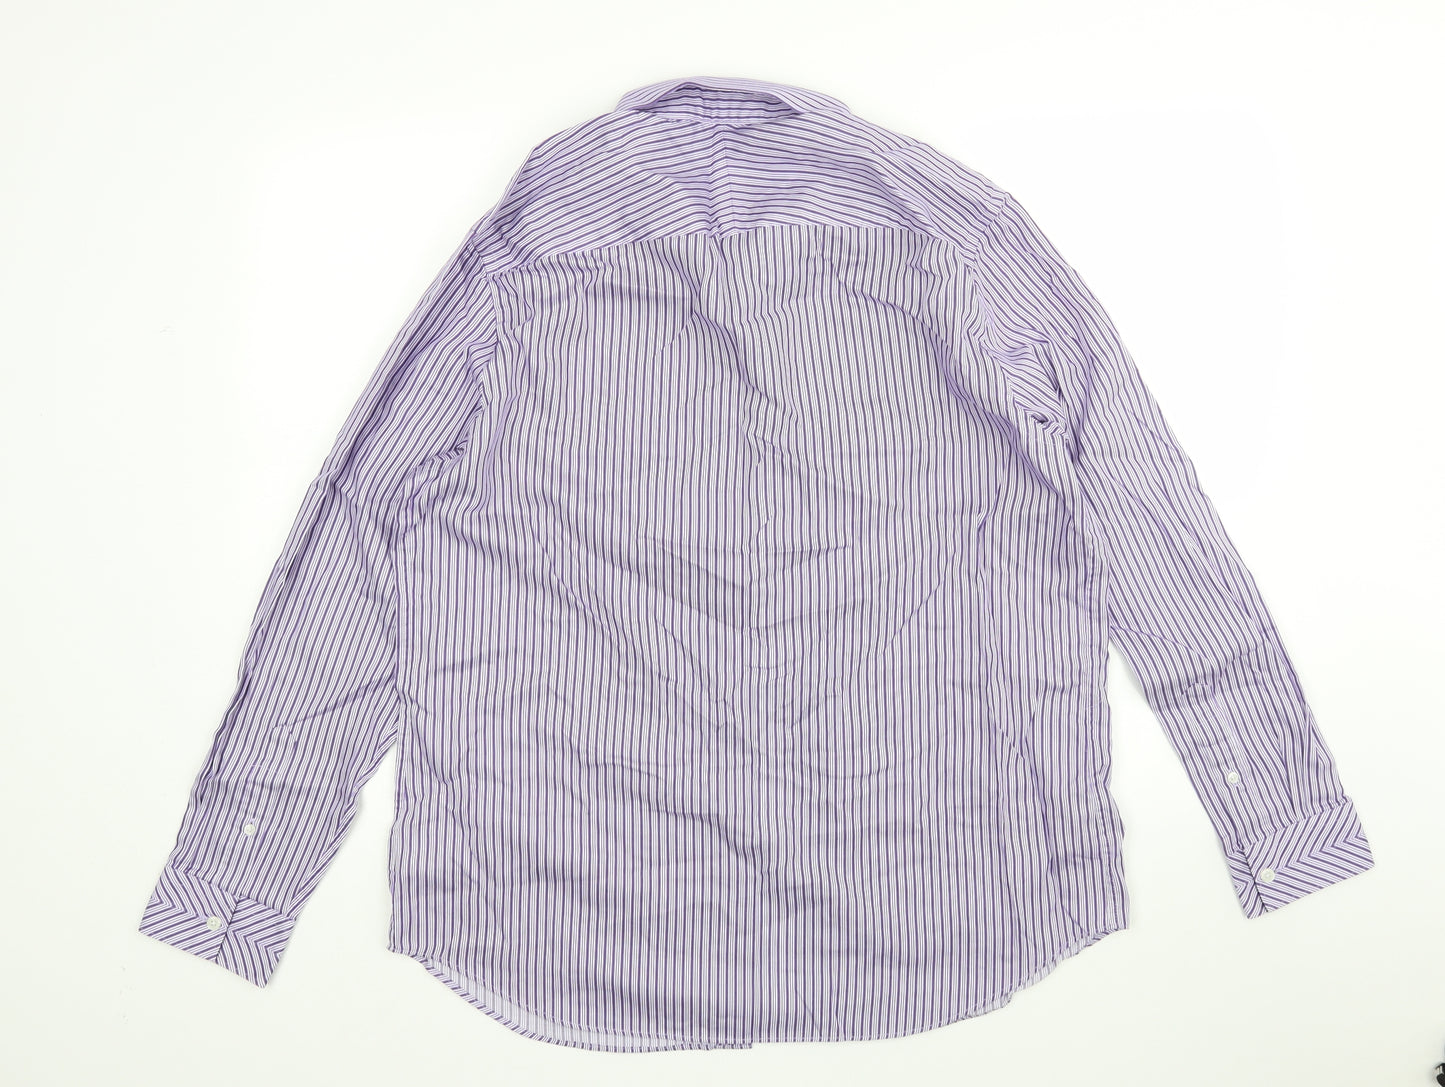 Jeff Banks Mens Purple Striped   Dress Shirt Size L